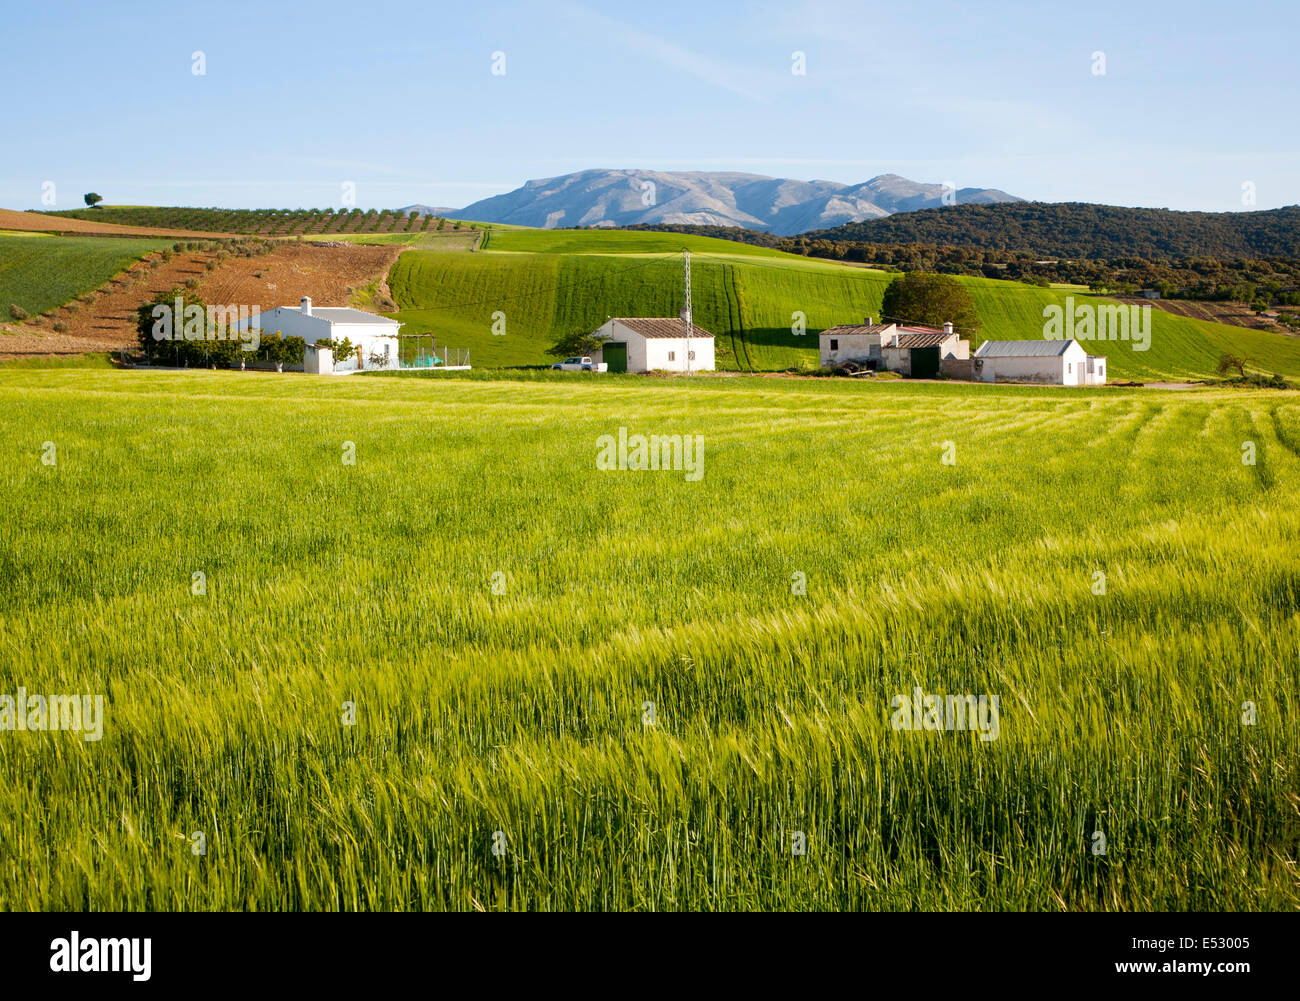 Ferme et granges situé dans le champs arables de la récolte d'orge verte près de Alhama de Granada, Espagne Banque D'Images